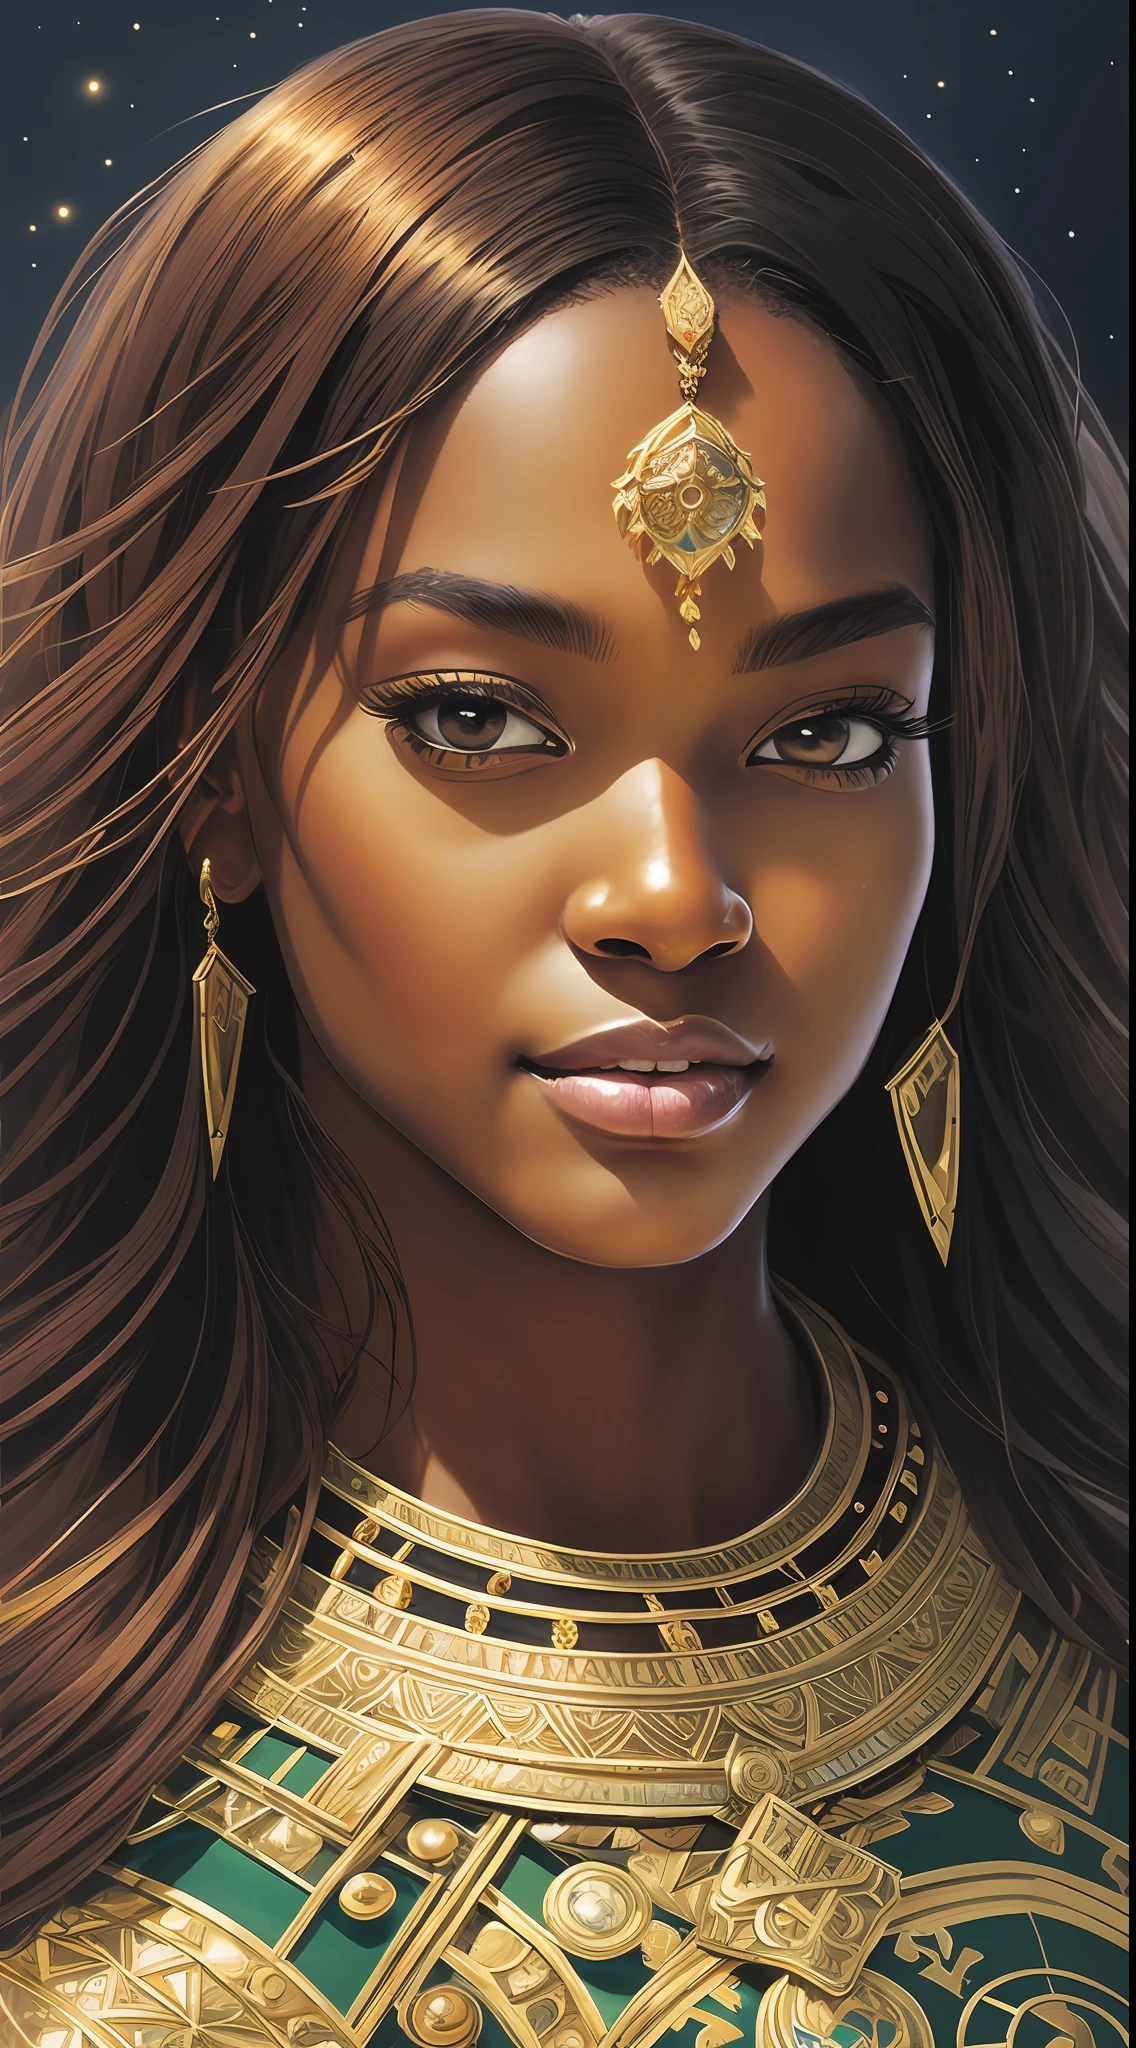 ความเมตตา overwatch, ภาพที่สวยงามของเจ้าหญิงแอฟริกันผิวดำที่งดงาม, เจ้าหญิงสีดำที่สวยงาม, ใบหน้ารูปทรงกลม, จมูกปุ่มกลม, ผิวกระจกสีดำเรืองแสง, ดวงตาสีน้ำตาลแดงประกายแวววาว, ไฮไลต์ผมยาวตรงสีน้ำตาลเกาลัด, adorned in ซับซ้อน golden jewelry, ยิ้มครึ่งมั่นใจ, ยิ้มแย้มแจ่มใส, ไม่มีการวาดภาพใบหน้า, แสงที่คมชัดอย่างน่าทึ่ง, ซับซ้อน, ป่า, ความงามที่แปลกใหม่, มีรายละเอียดสูง, การวาดภาพดิจิตอล, อาร์ตสเตชั่น, แนวคิดศิลปะ, เรียบ, โฟกัสคมชัด, ภาพประกอบ, งานศิลปะโดย Artgerm และ Gregor Rutkowski และ Alphonse Mucha, ภาพจากกล้องอวกาศ